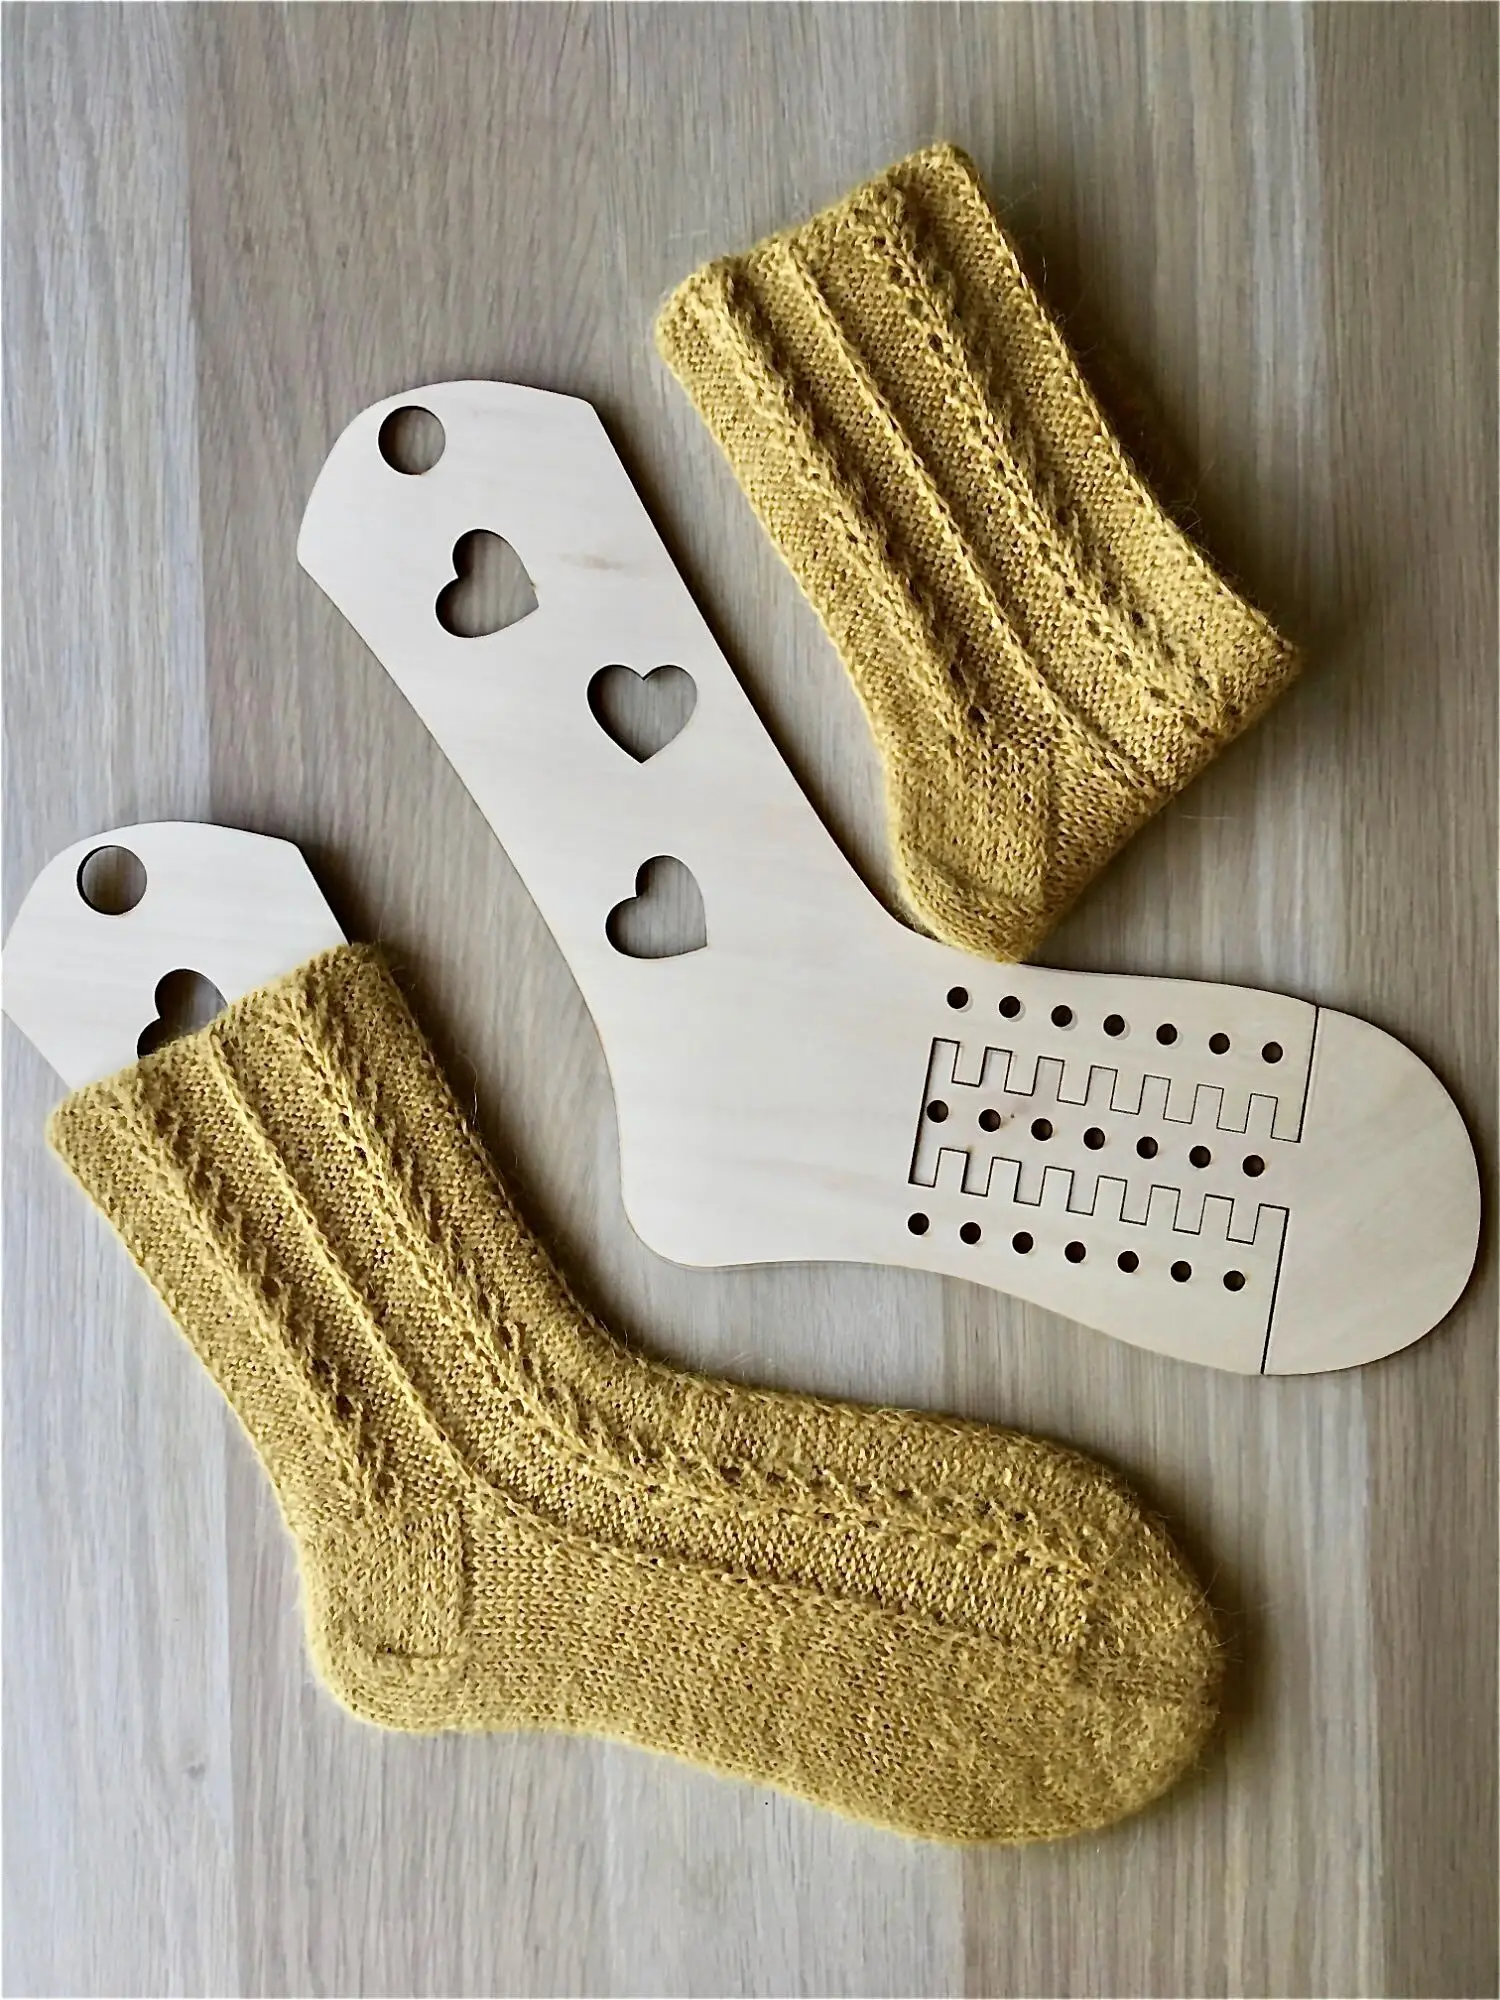 extensor de calcetines Calcetín Bloqueadores par L 27 cm Bloqueadores de calcetines de madera 